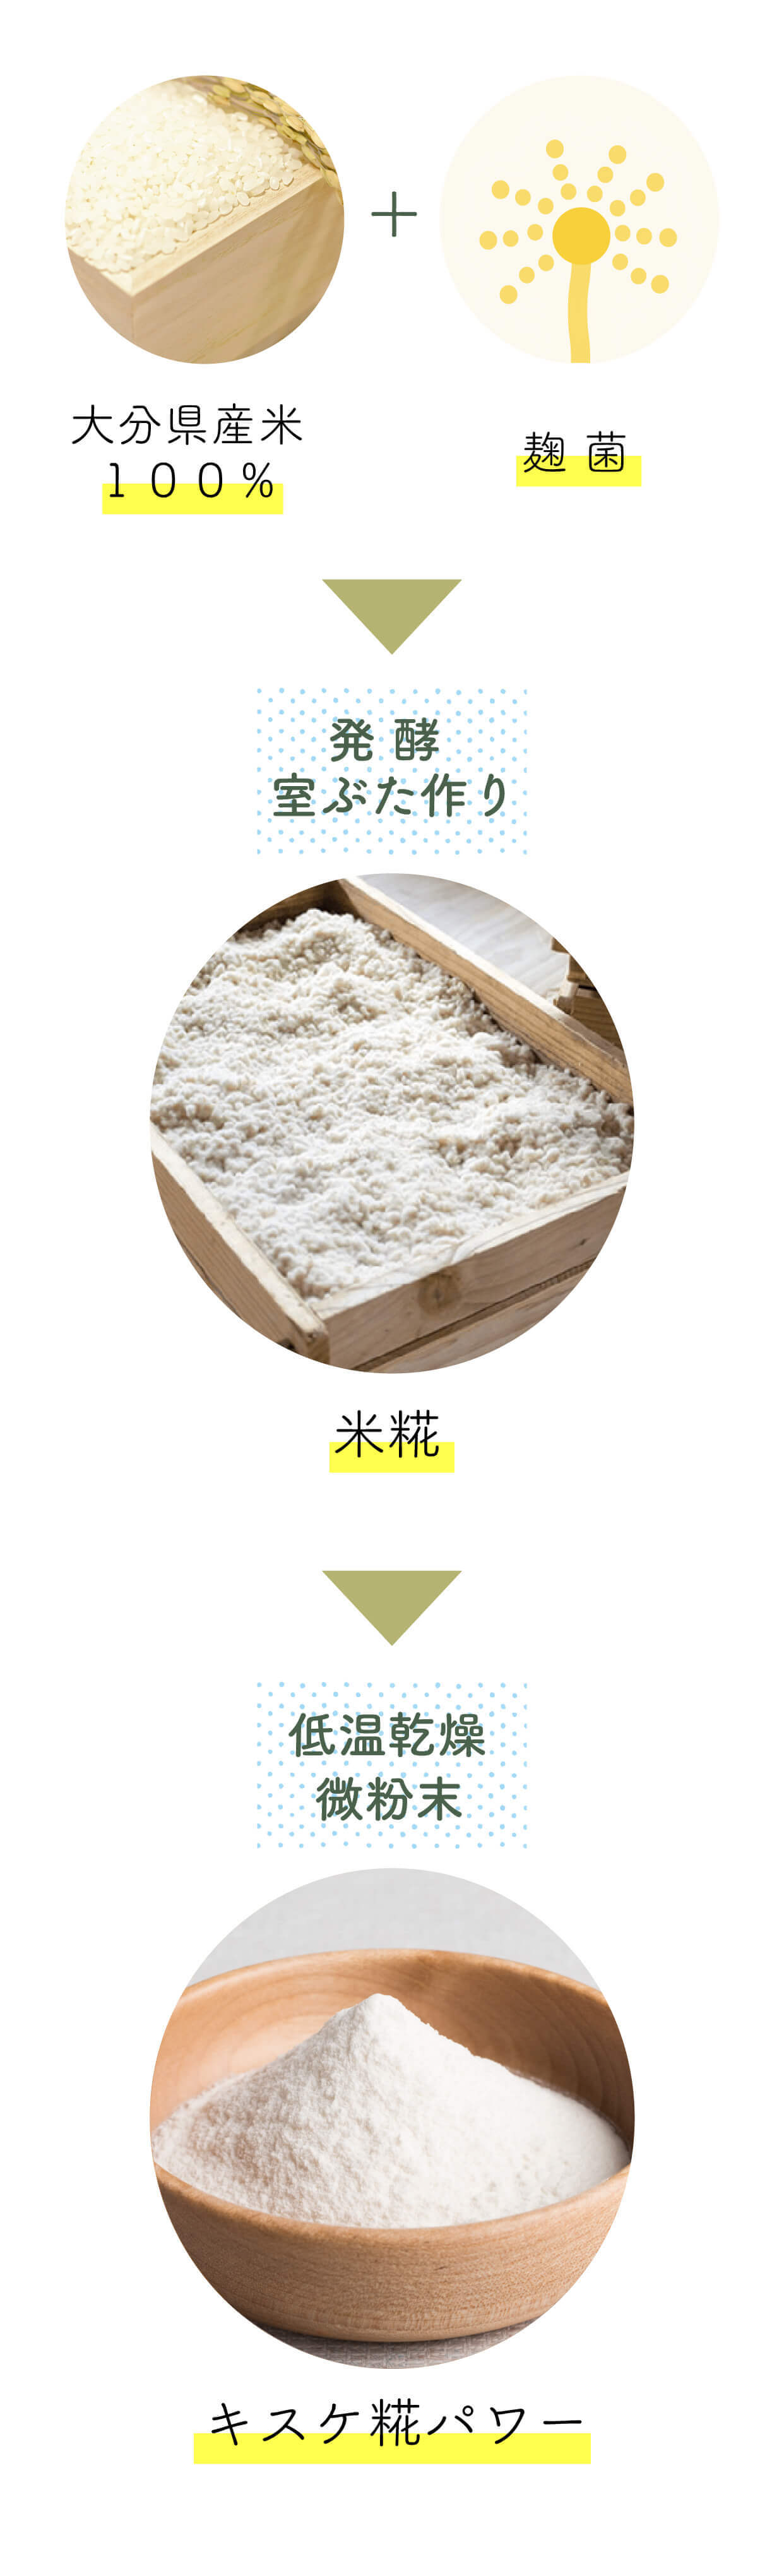 こだわりの室ぶた作り乾燥米糀 低温乾燥で米糀を粉末にしました 糀屋本店 乾燥米麹 (微粉末) キスケ糀パワー プレーン 30g